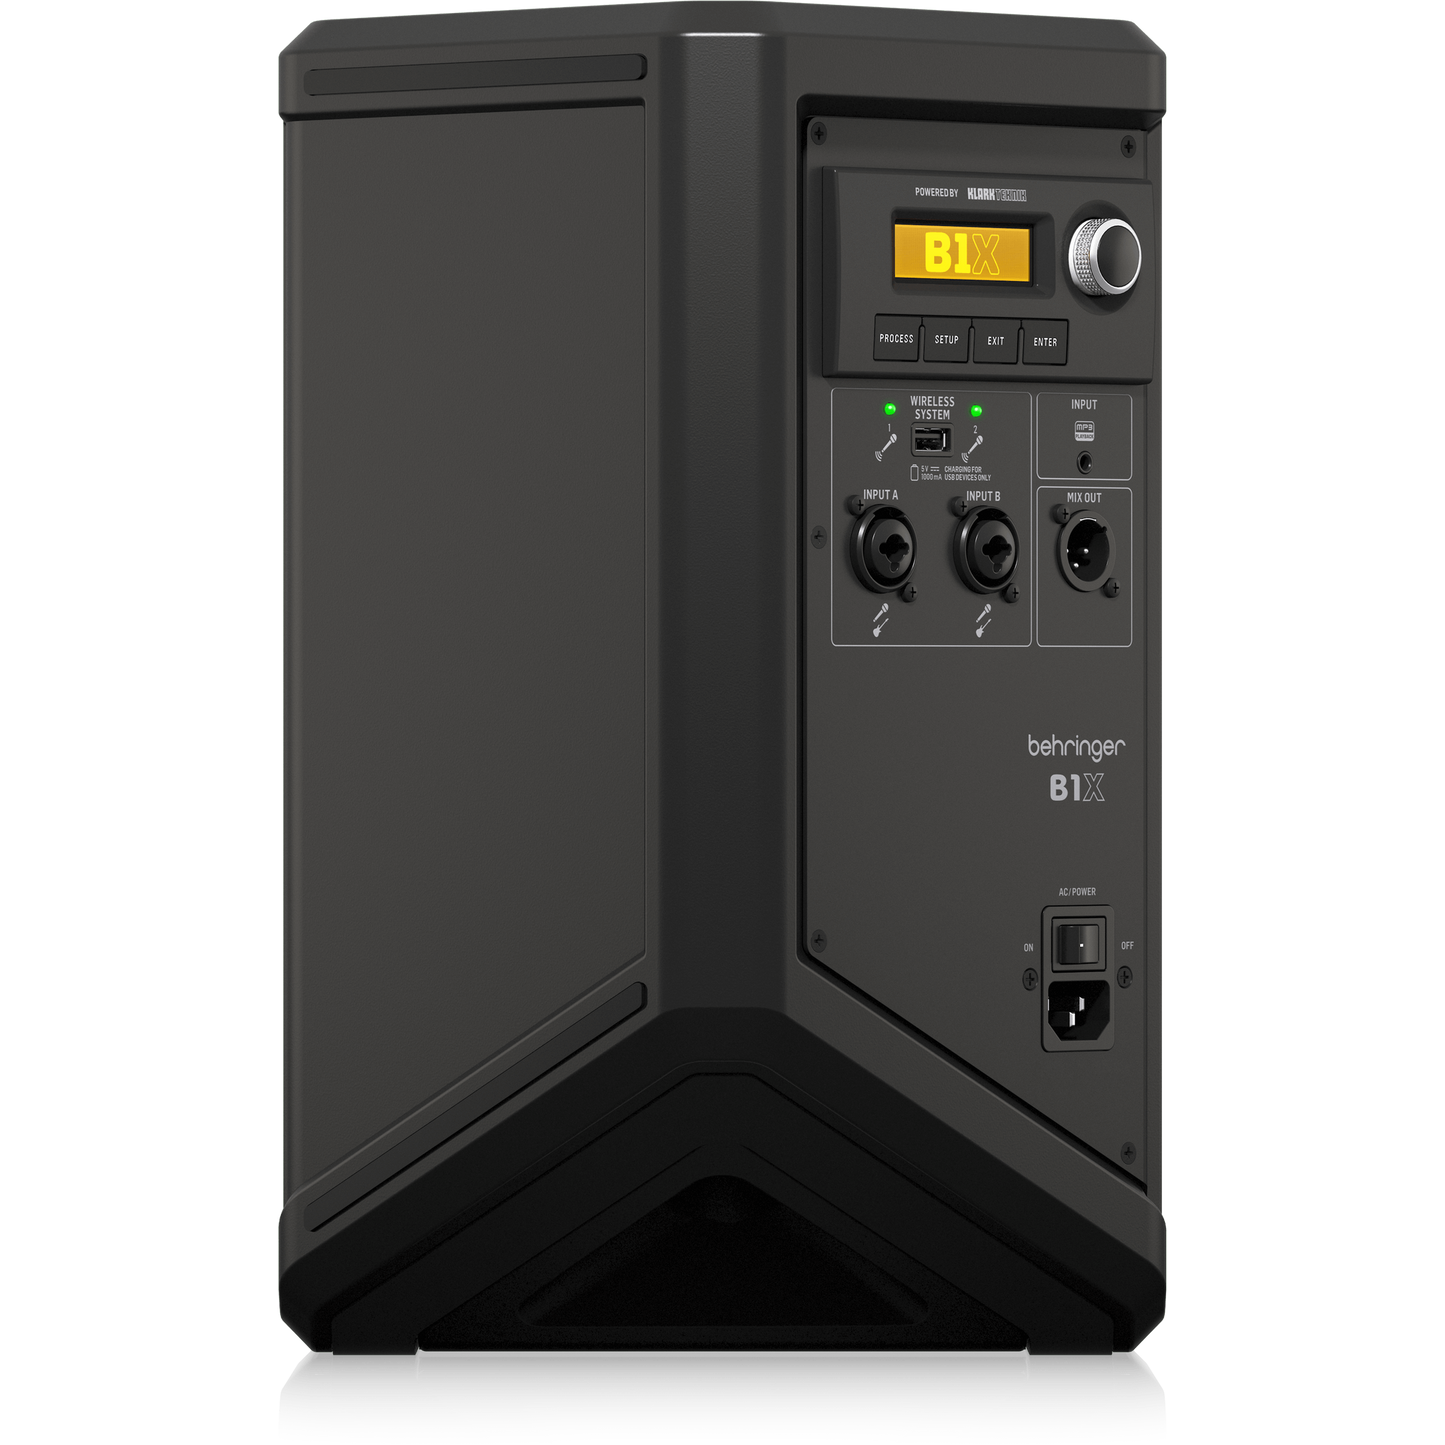 مكبر صوت محمول بهرينجر B1X 1x6.5 بوصة 250 وات مع تشغيل البطارية، خلاط رقمي، تأثيرات